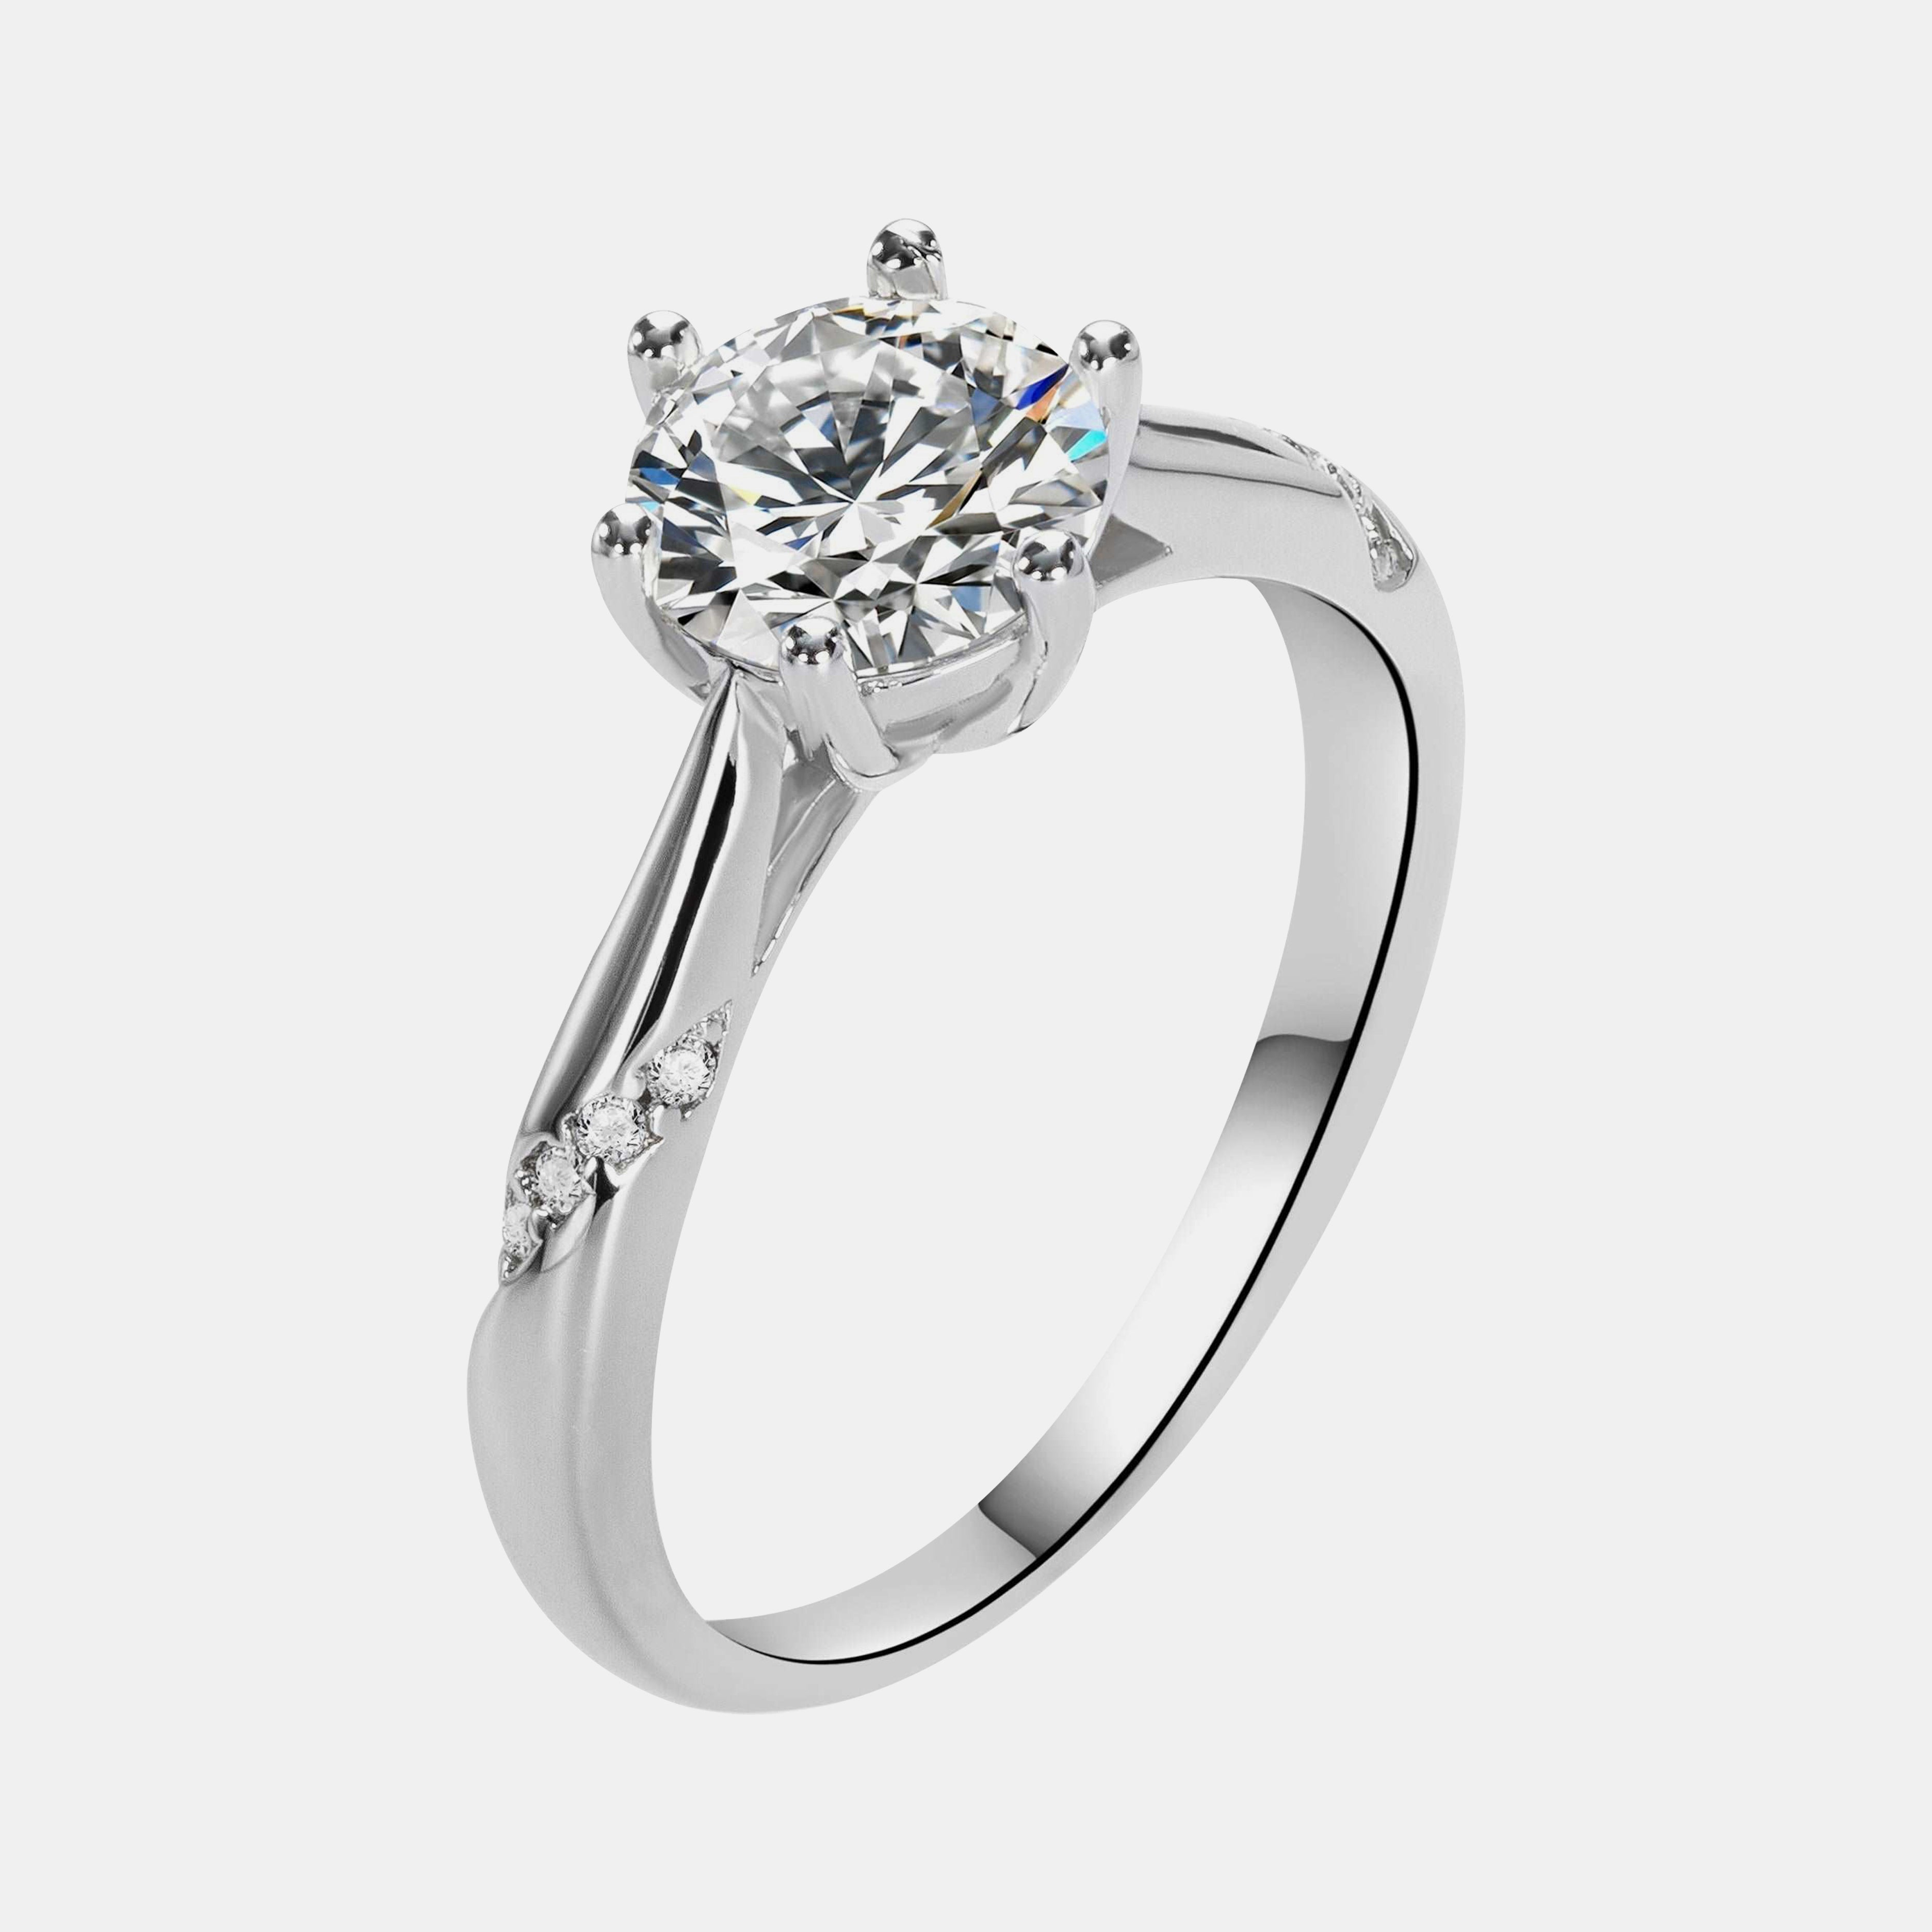 【#12】925 Sterling Silver Moissanite Ring